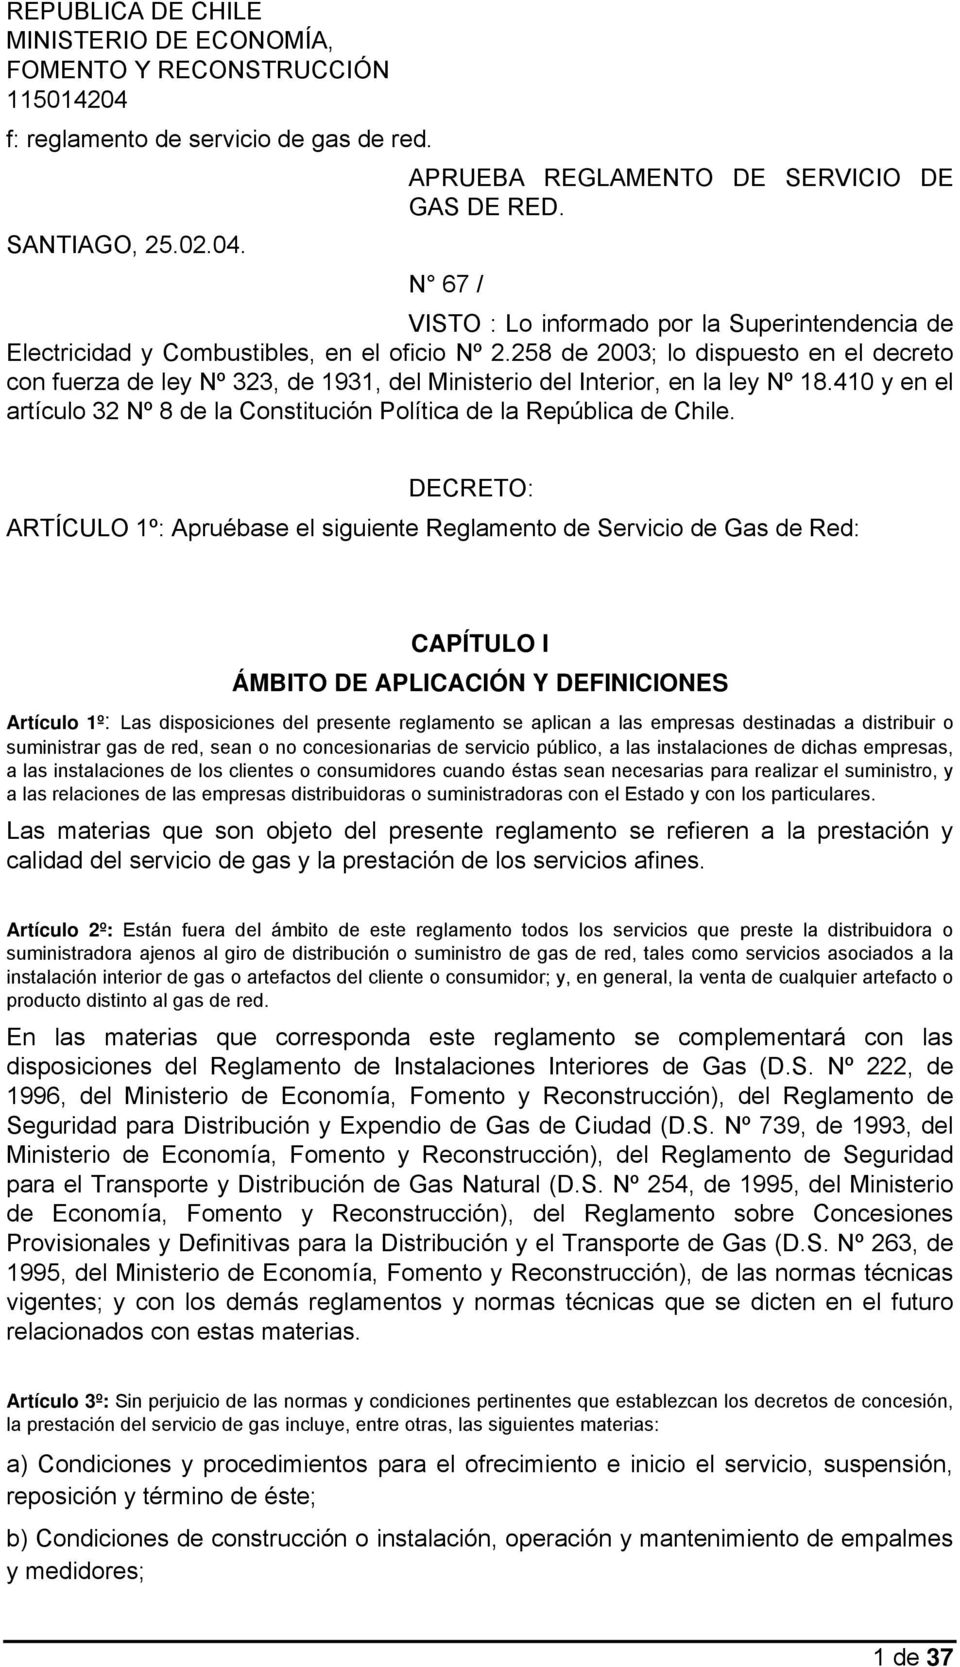 410 y en el artículo 32 Nº 8 de la Constitución Política de la República de Chile.